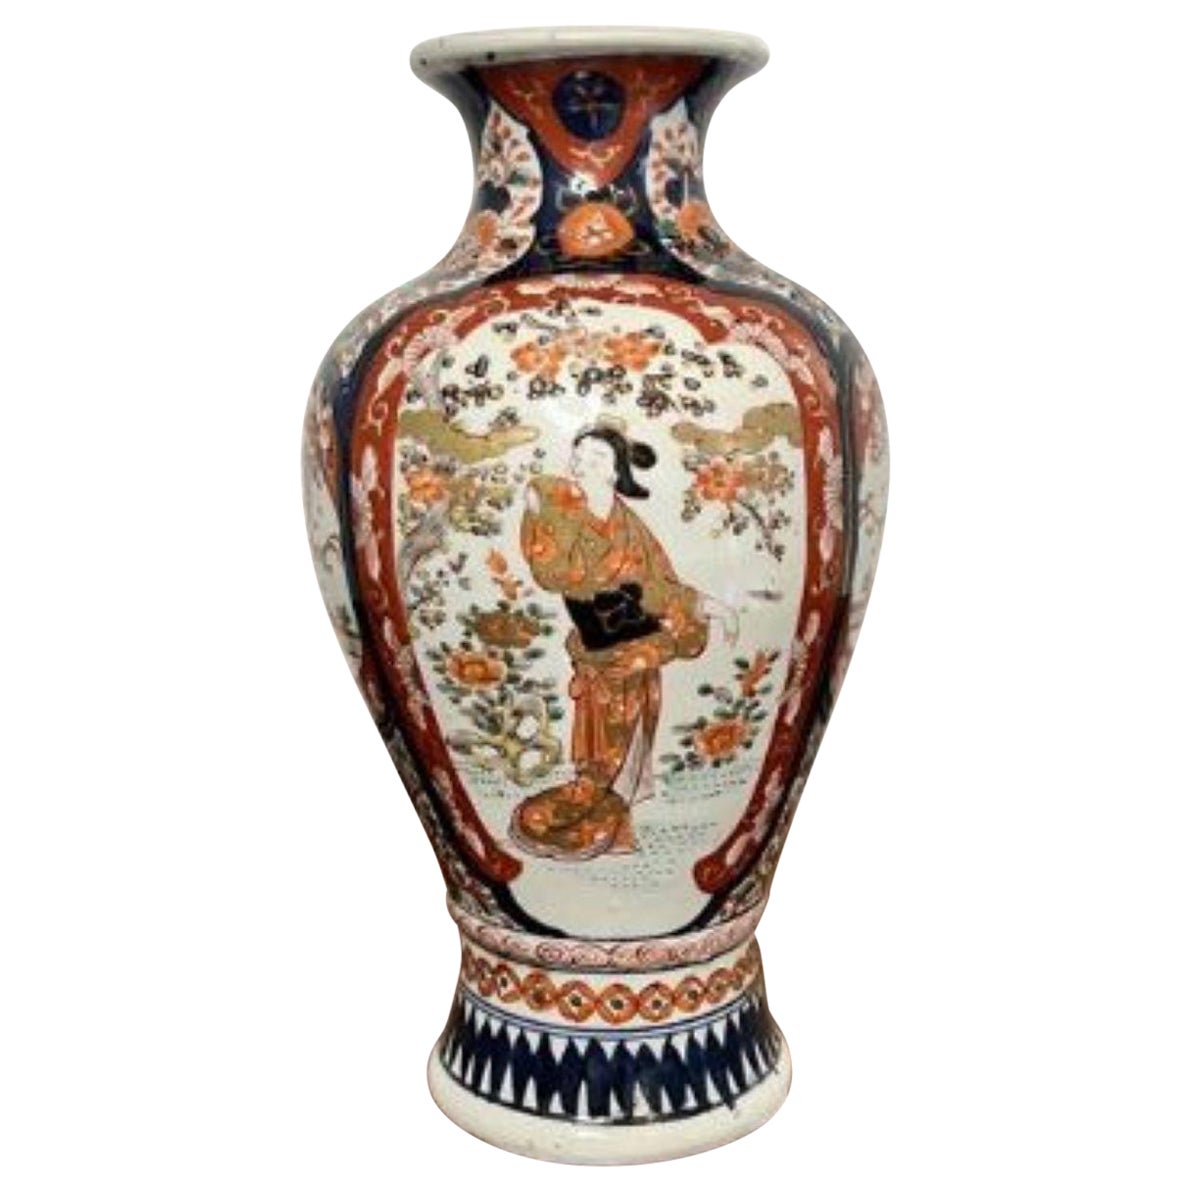 Fantastique vase japonais ancien en forme d'Imari 